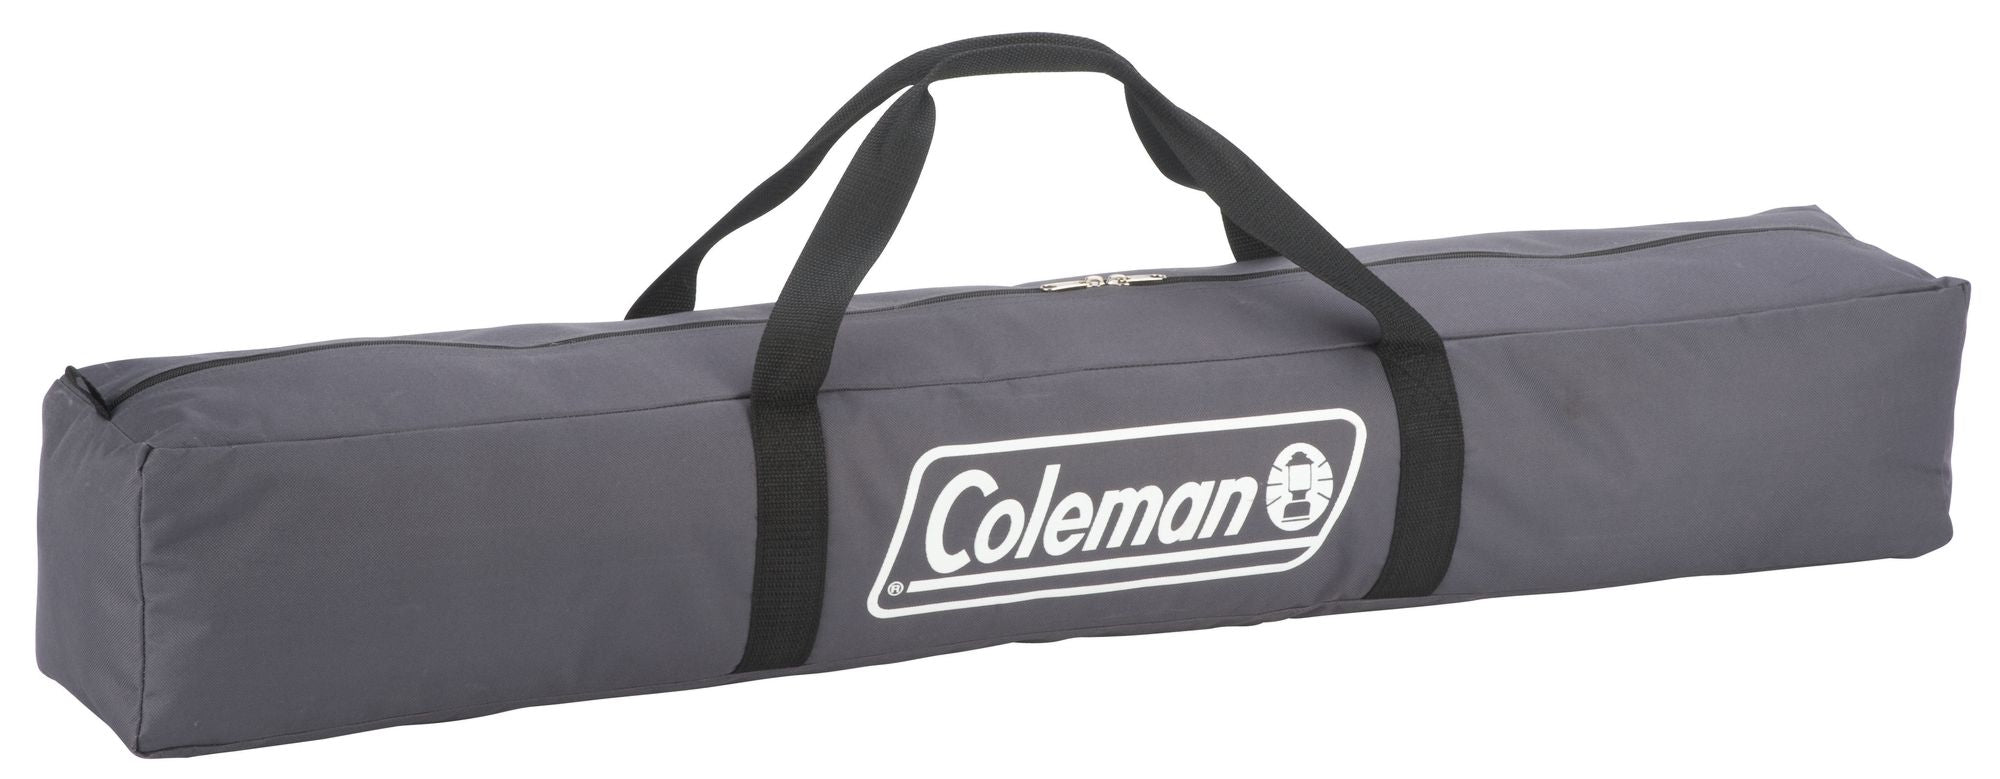 Coleman Steel Packaway Camp Bed